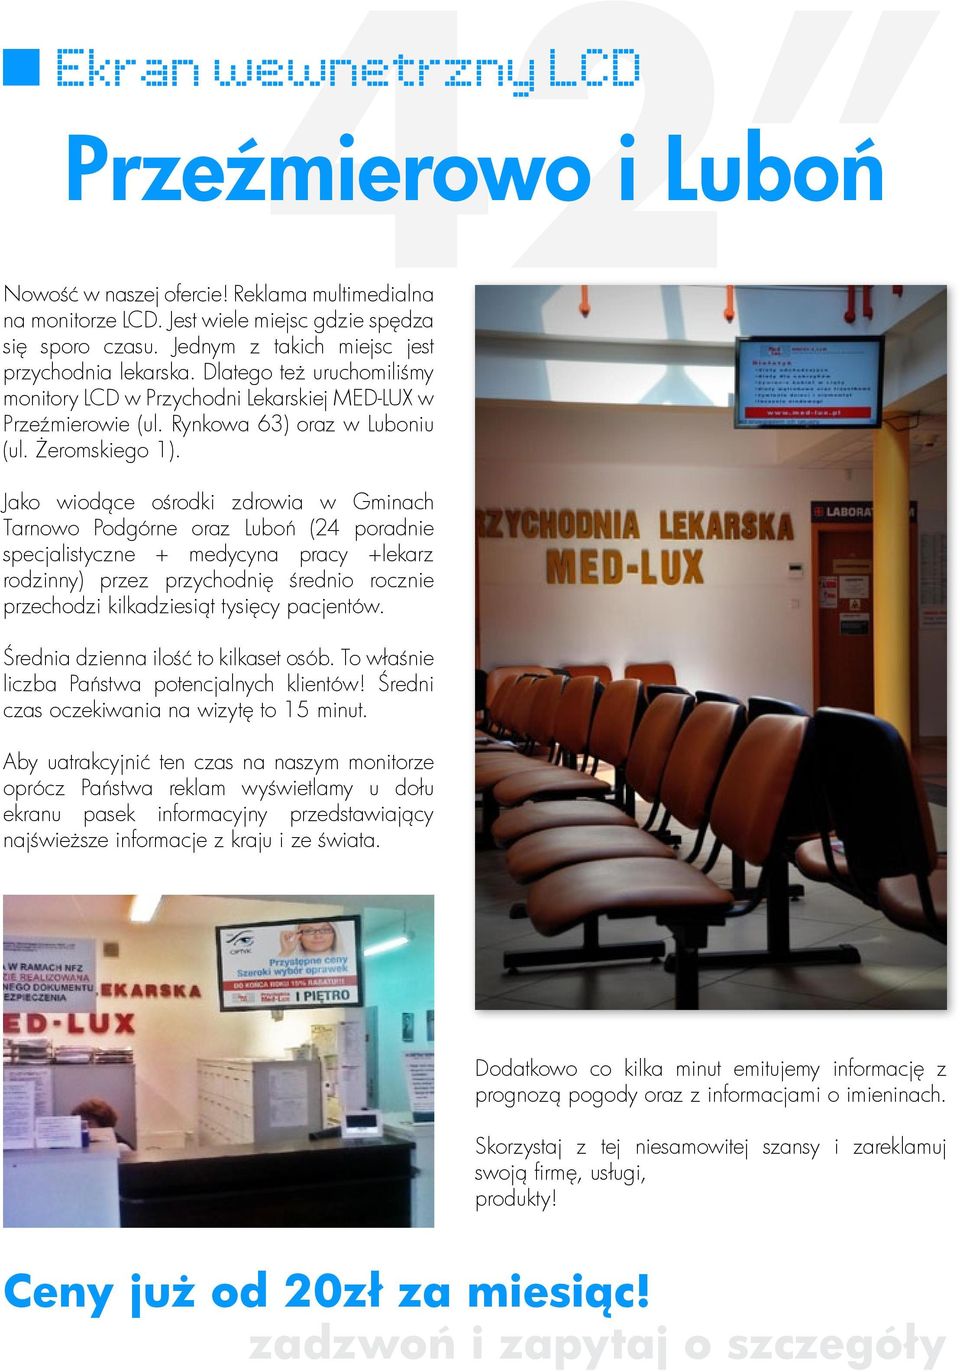 Jako wiodące ośrodki zdrowia w Gminach Tarnowo Podgórne oraz Luboń (24 poradnie specjalistyczne + medycyna pracy +lekarz rodzinny) przez przychodnię średnio rocznie przechodzi kilkadziesiąt tysięcy